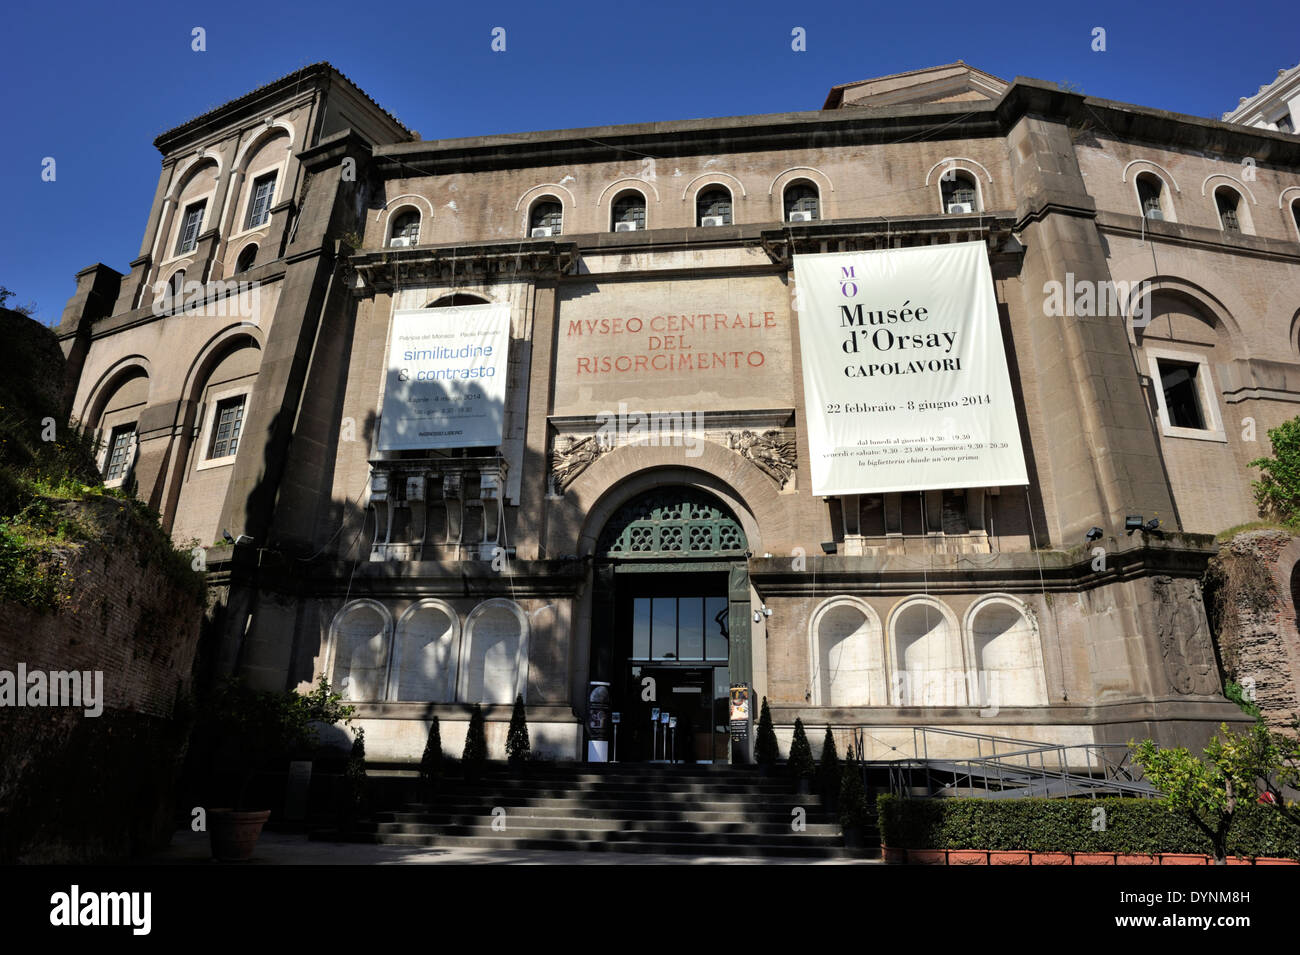 Italy, Rome, Museo Centrale del Risorgimento Stock Photo